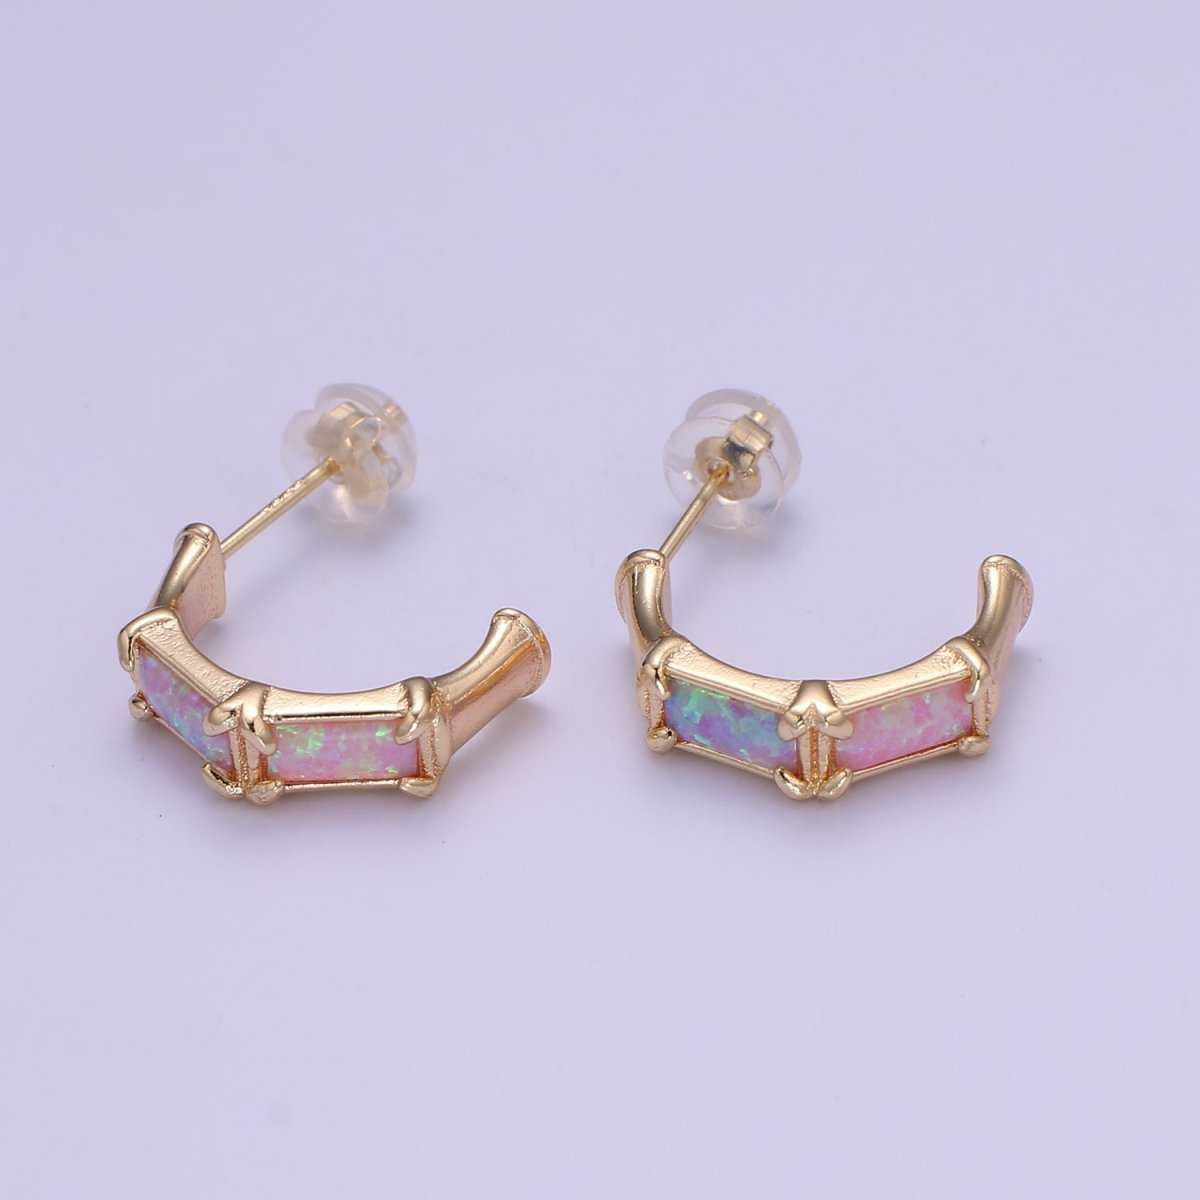 20mm Hoop Minimalist Opal Hoop Earrings in 18k Gold Filled Earring Pink Blue White Opal, Bamboo Style Jewellery Dainty Hoop Earring for gift P-078~P-080 - DLUXCA